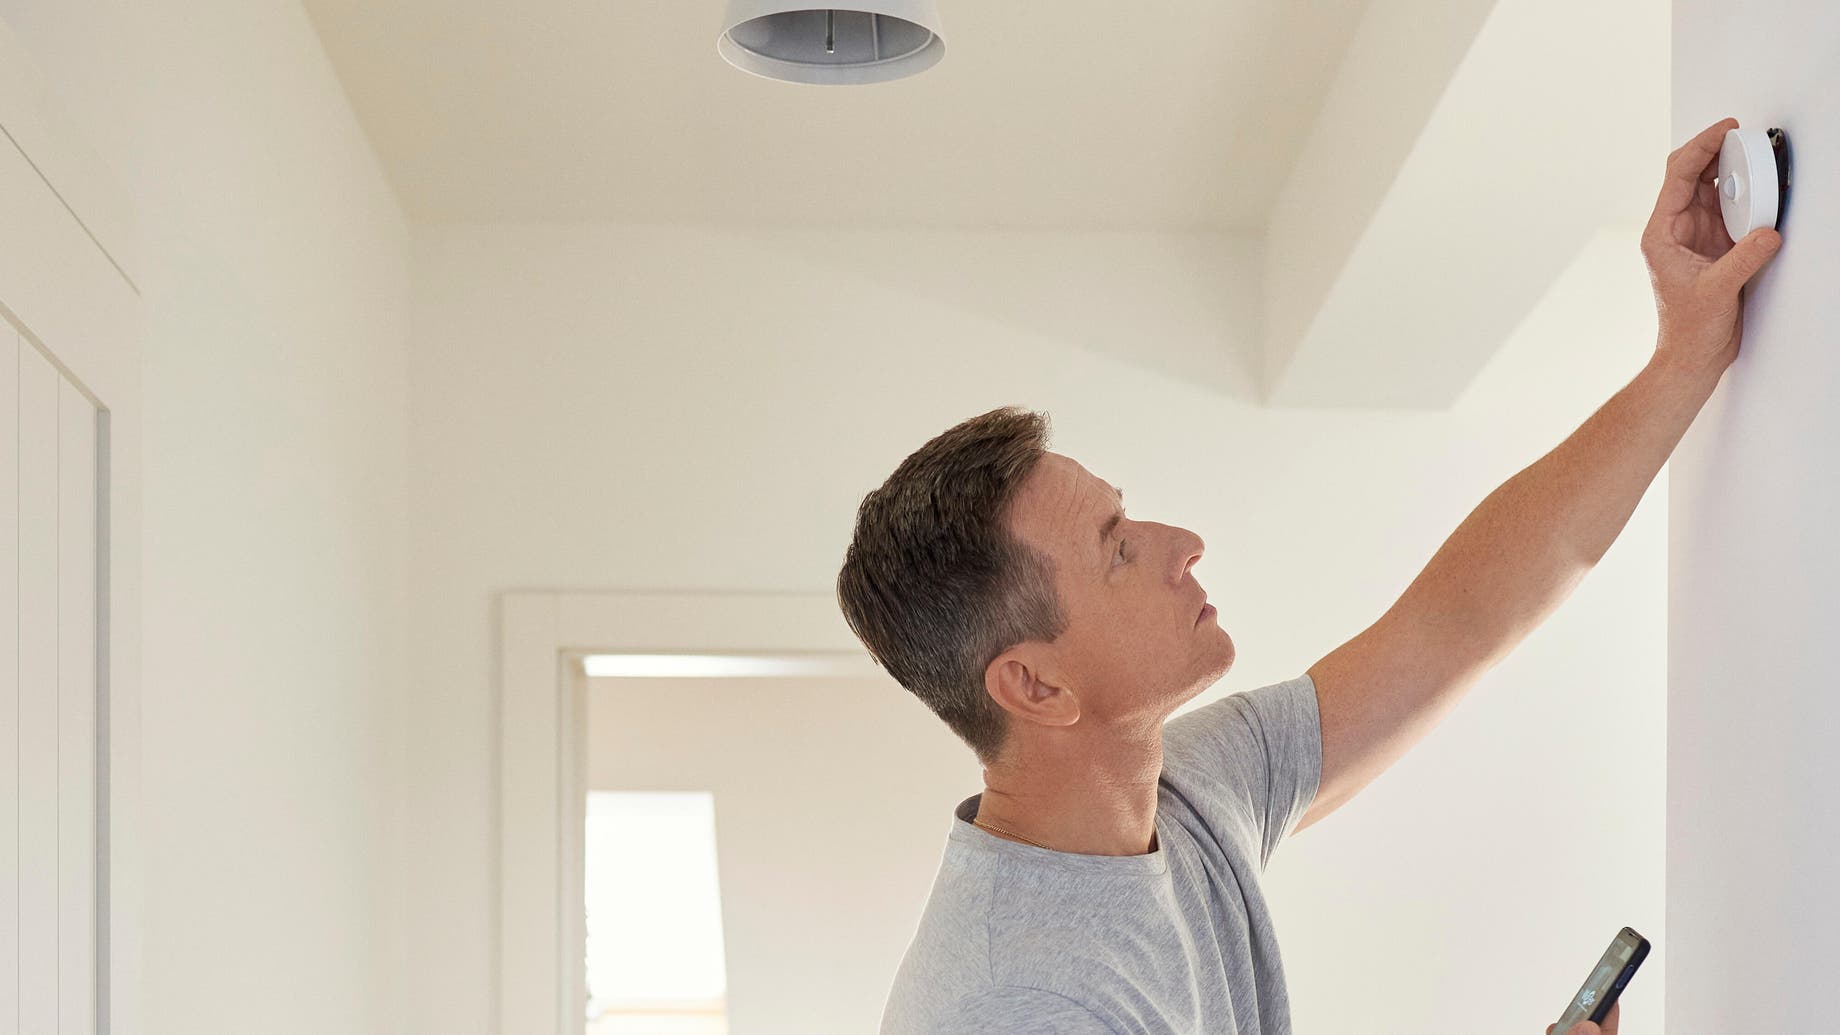 Cómo instalar un sensor de movimiento en el hogar?